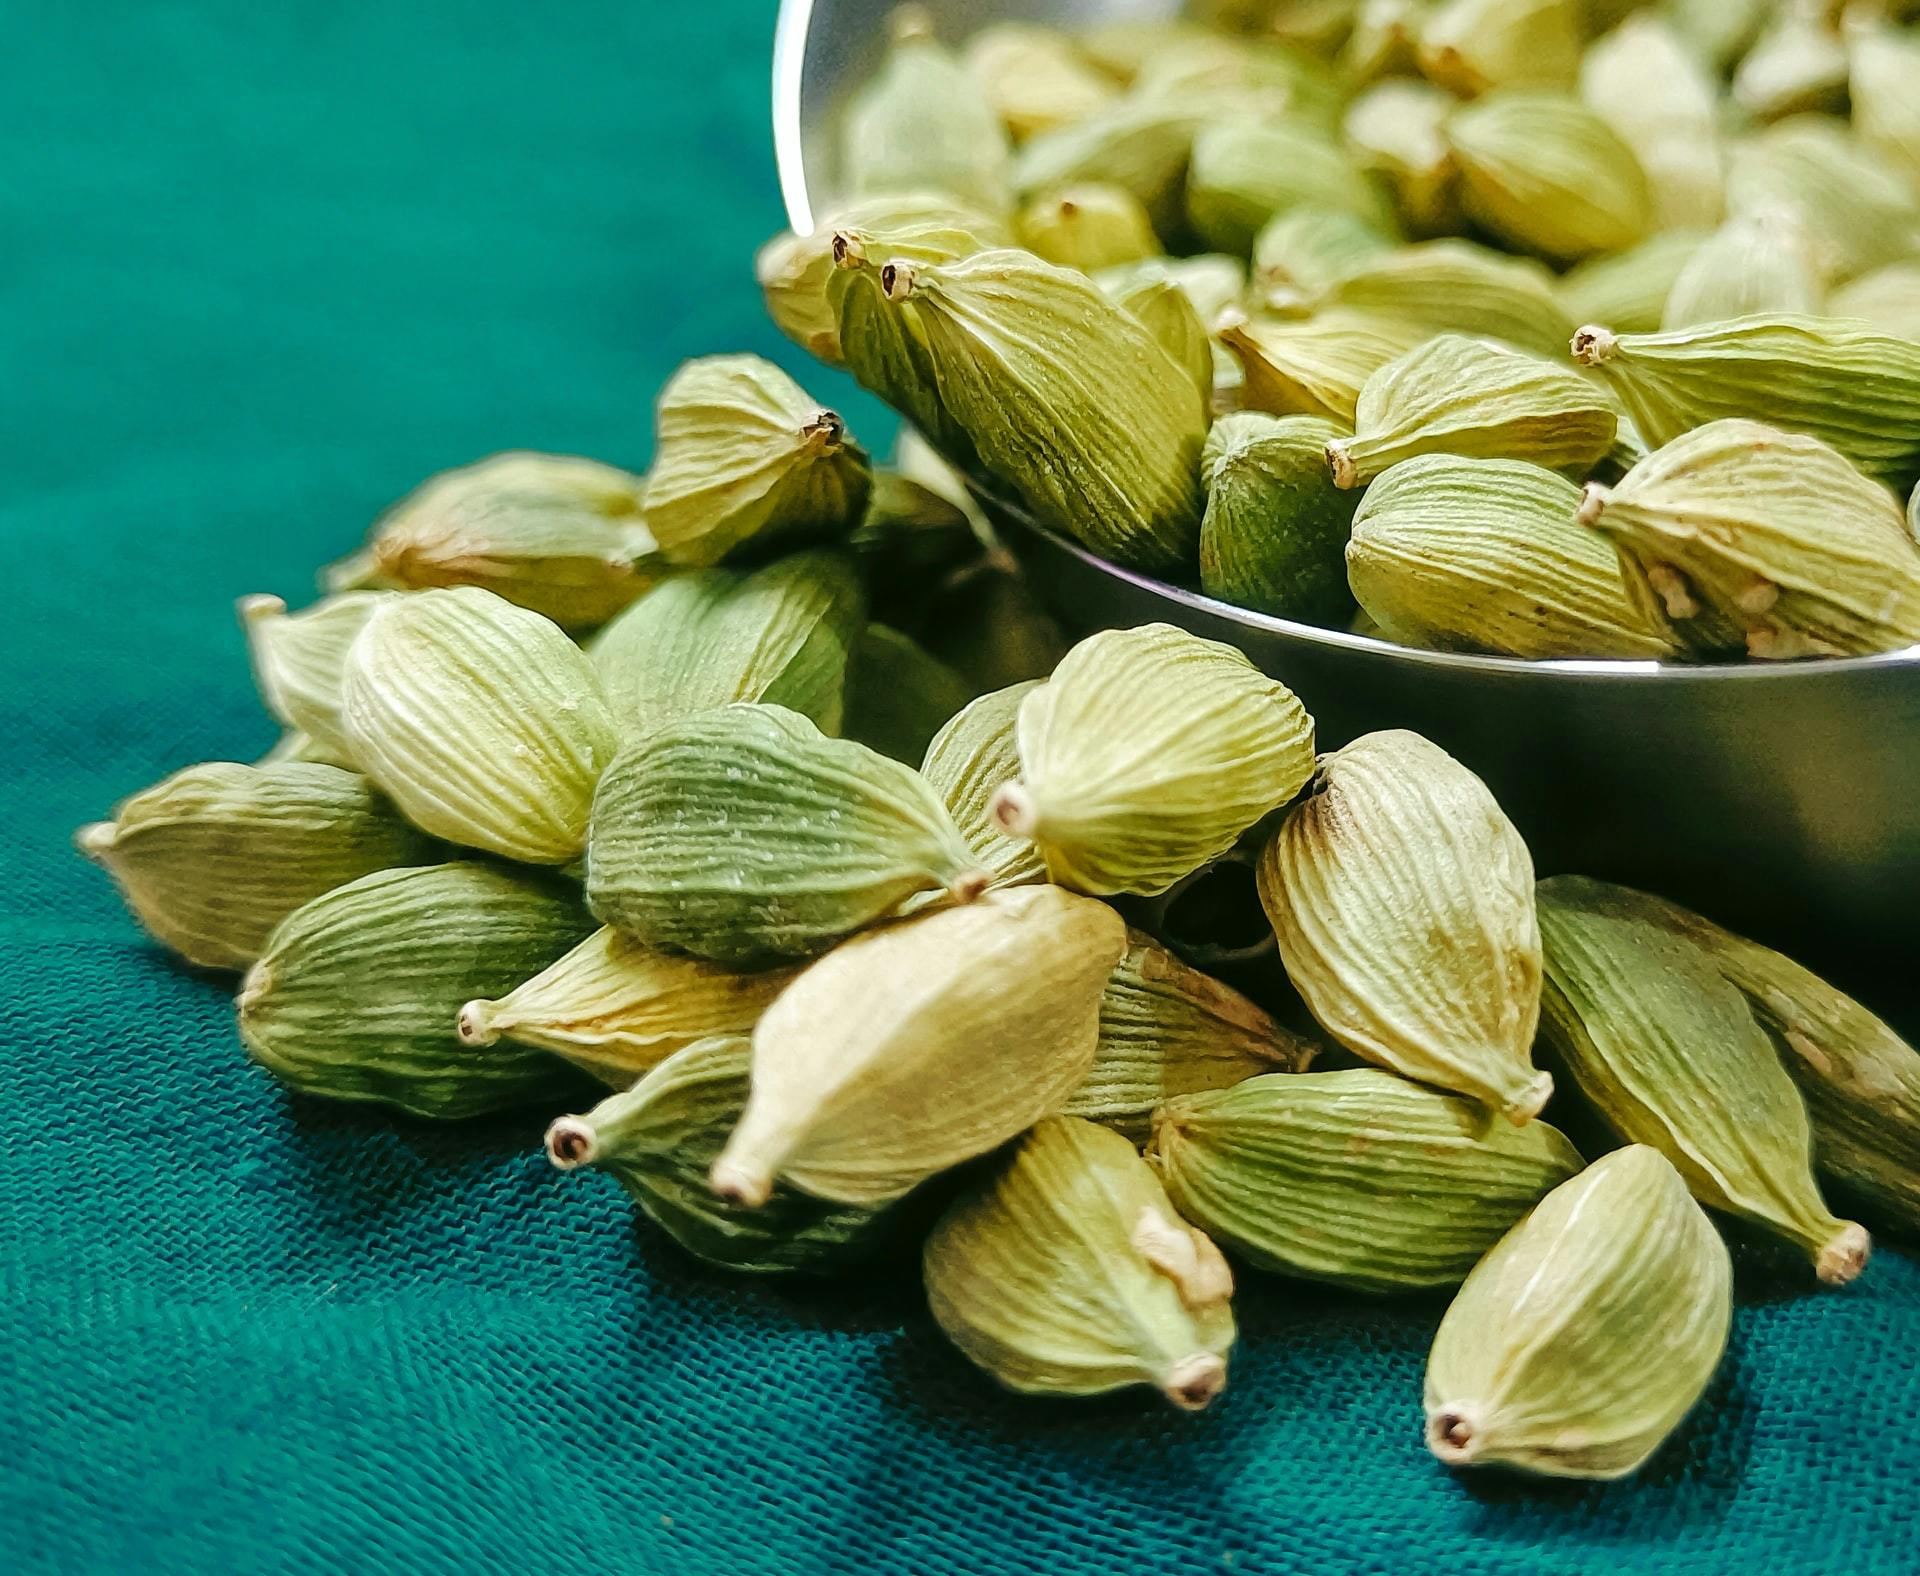 Cardamome graines ou poudre - Achat, usage et vertus - Ile aux épices